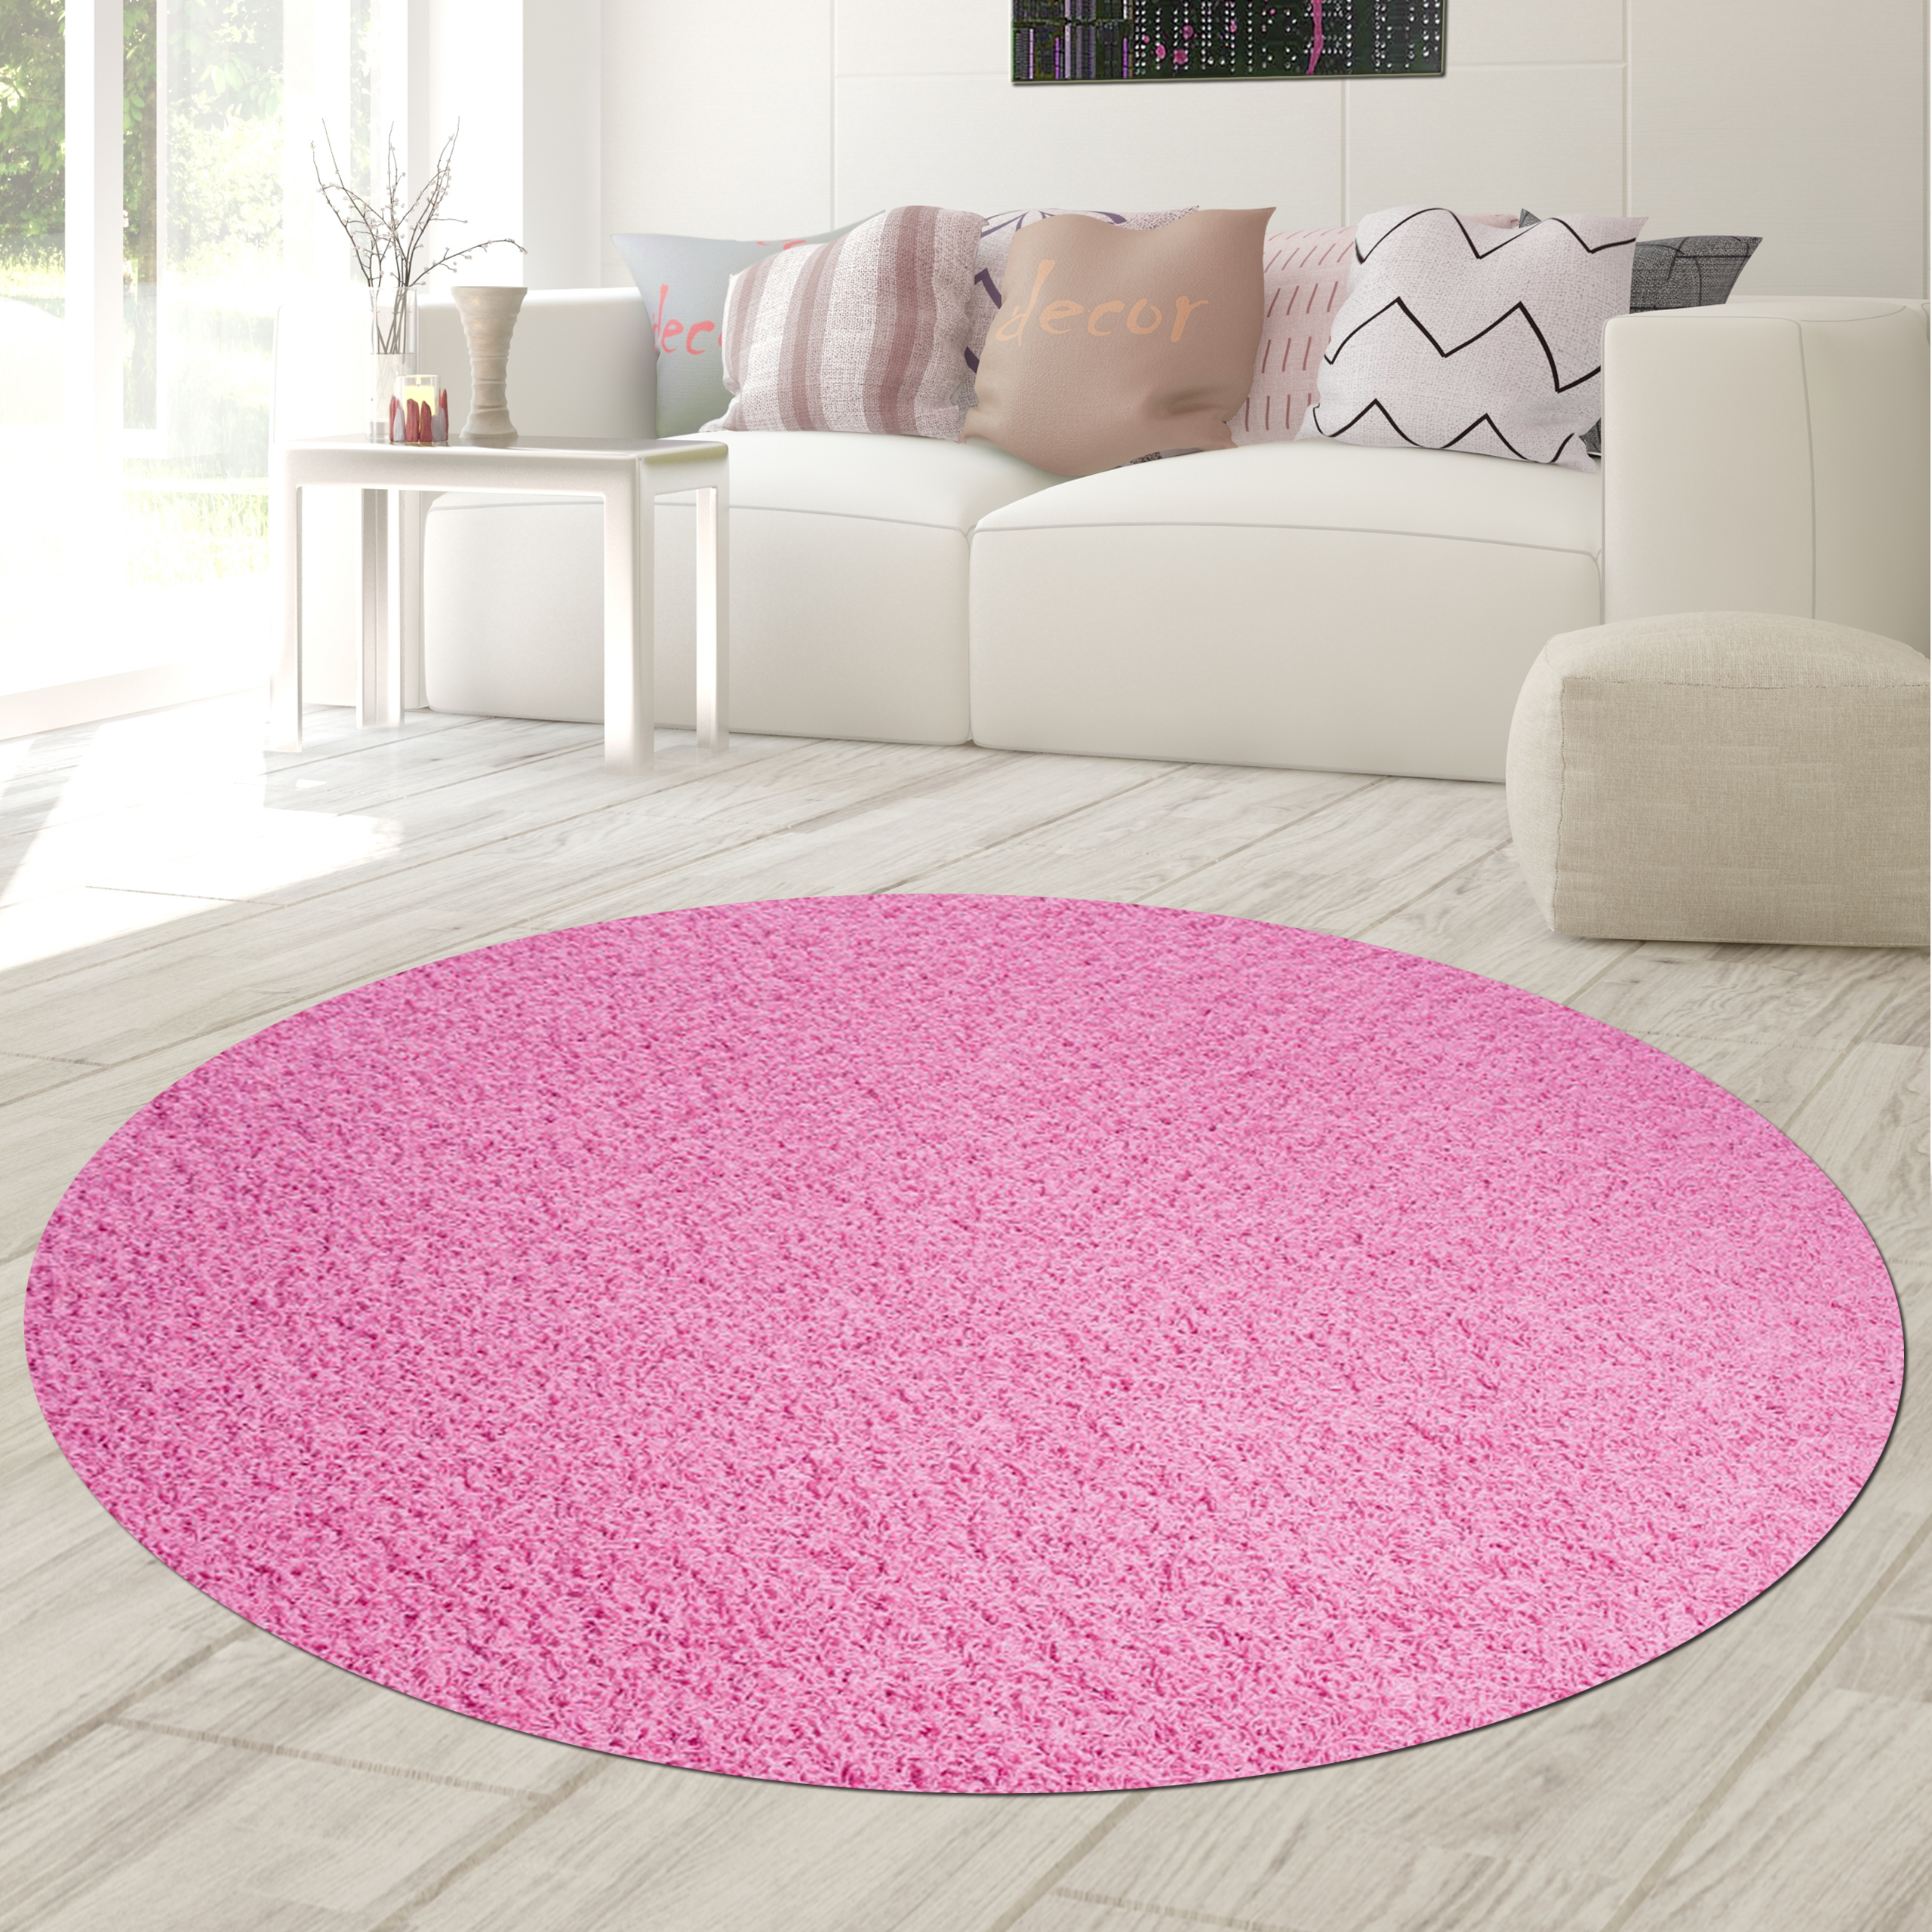 High pile carpets & Shaggy shop online: Good quality, fair prices - Teppich -Traum